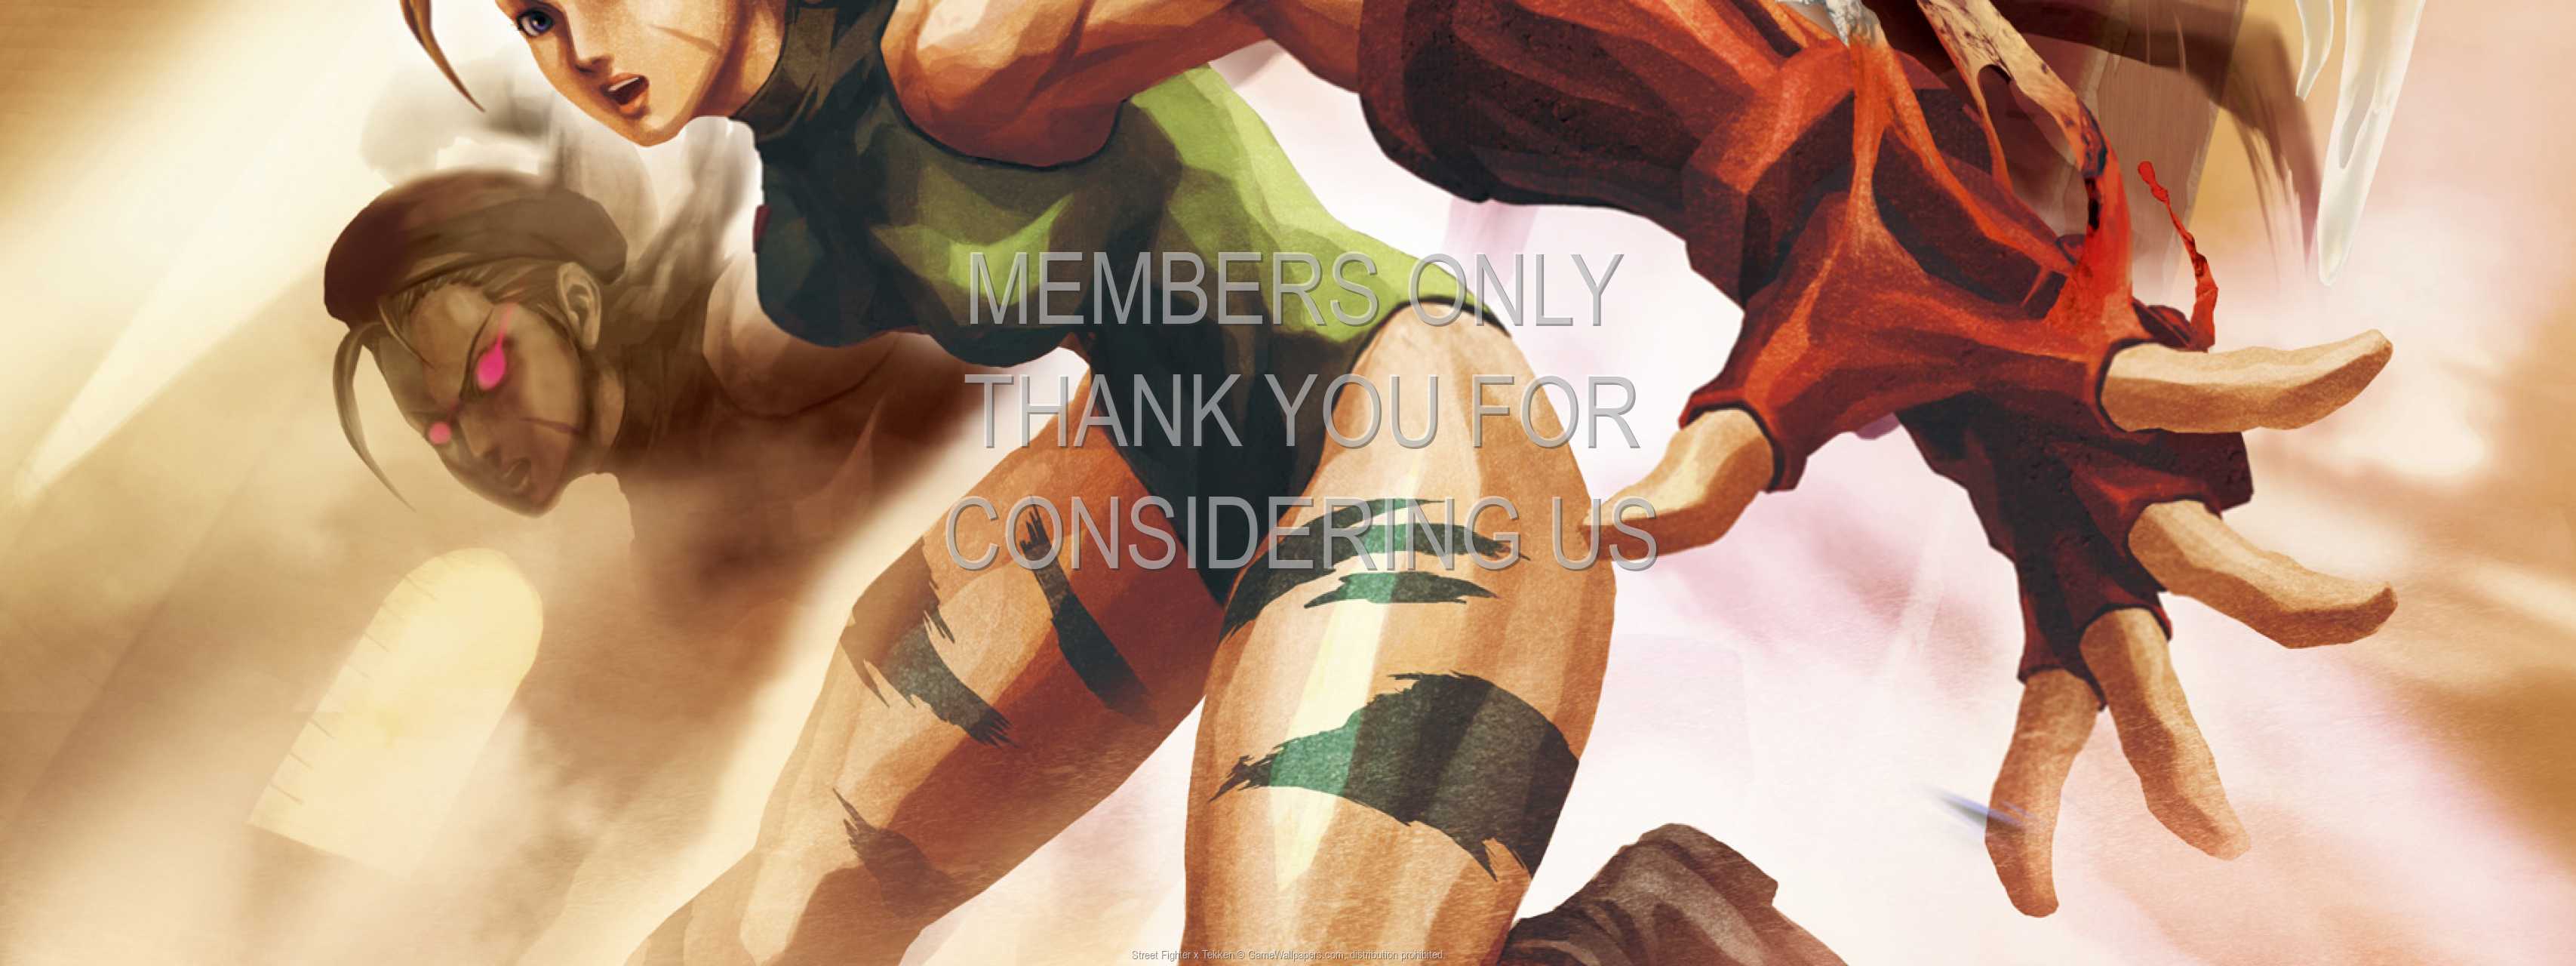 Street Fighter x Tekken 720p Horizontal Mobile wallpaper or background 01